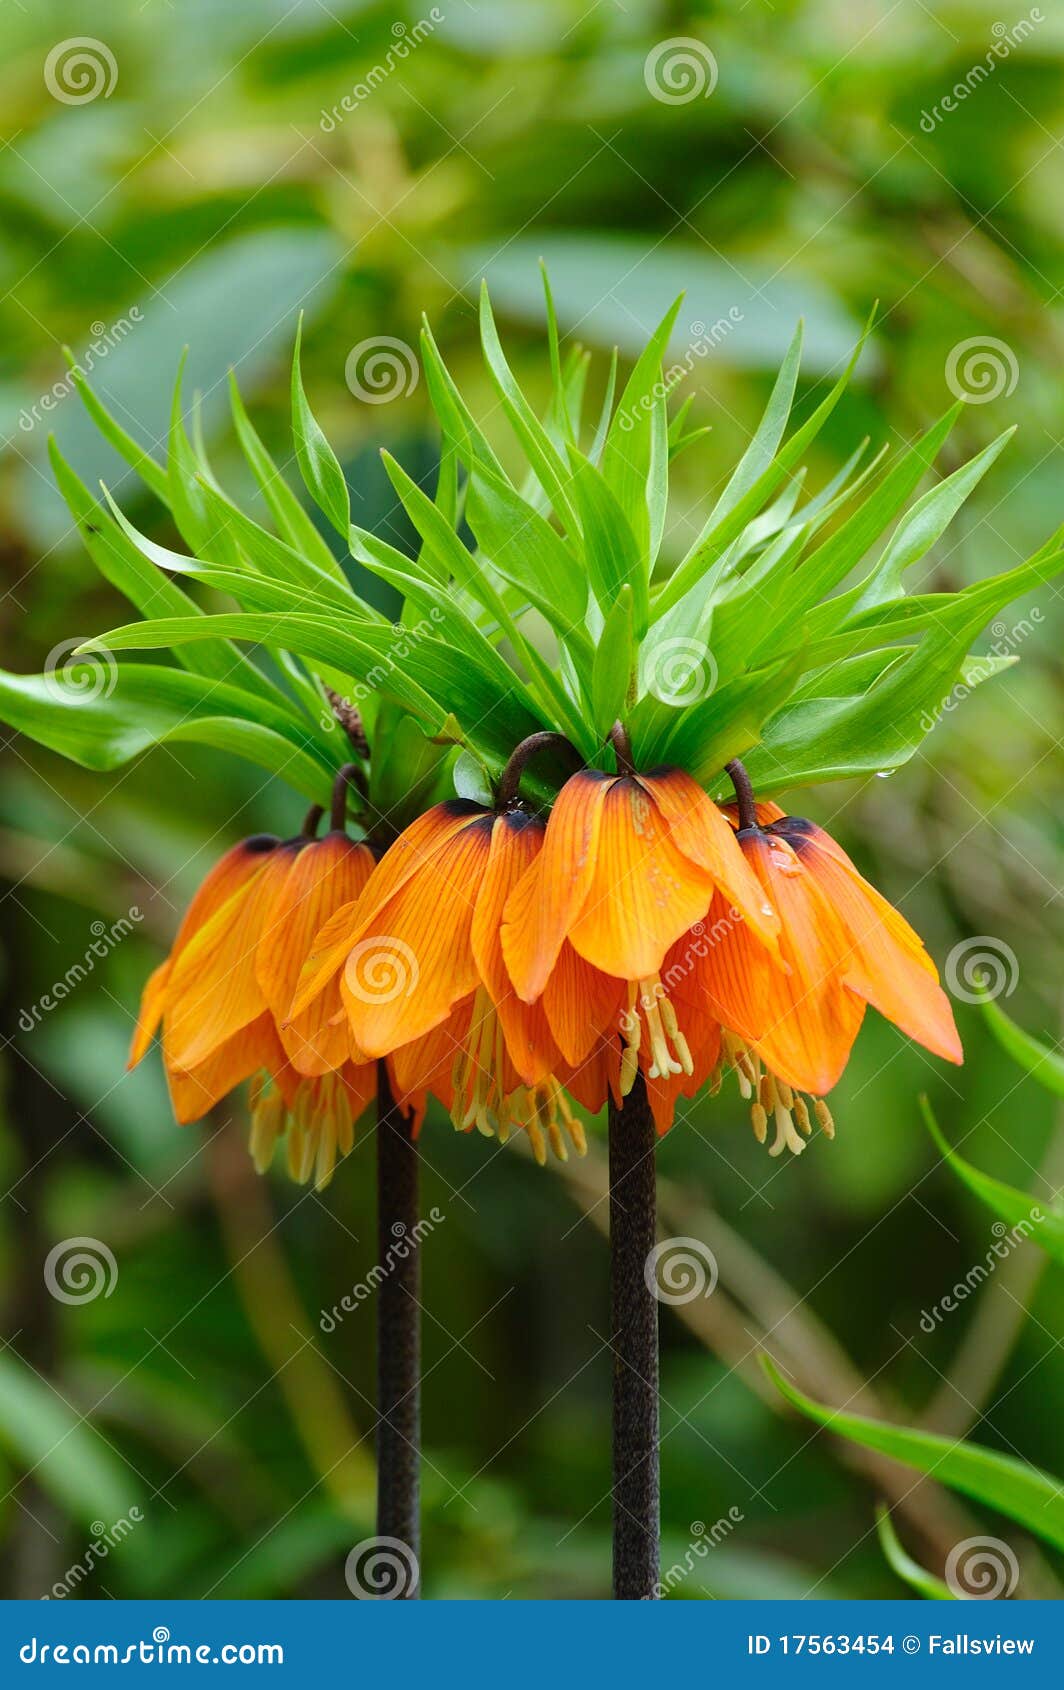 Fritillaria цветка кроны имперский. Bc зацветая fritillaria цветка кроны Канады butchart садовничает имперская весна victoria